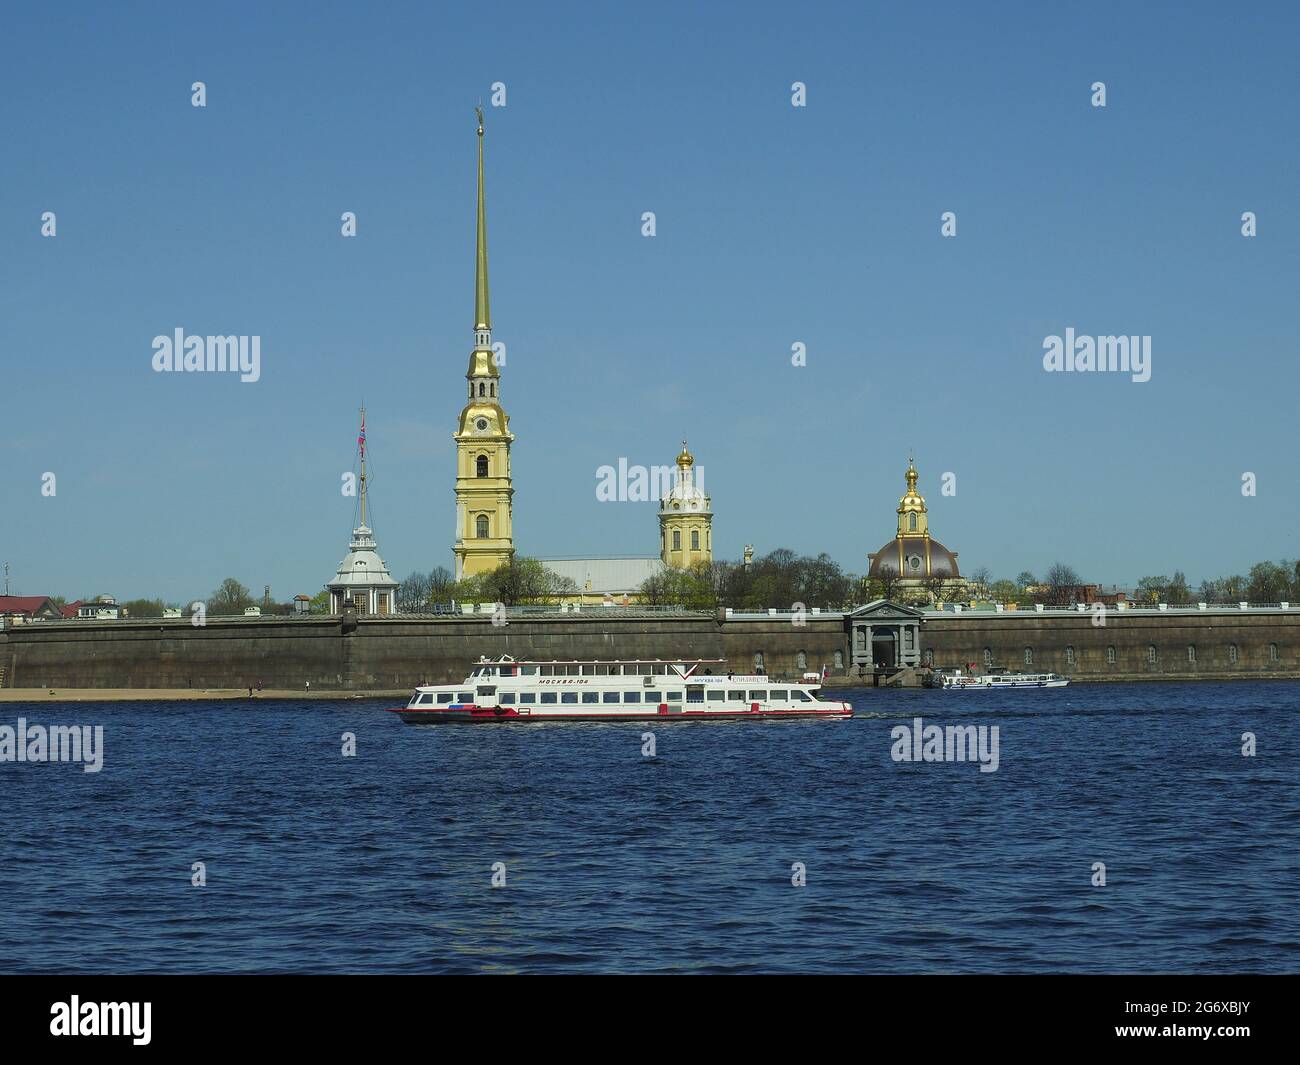 Peter und Paul Festung auf dem Fluss Neva, St. Petersburg, Russland Landschaft während des sonnigen Tages aufgenommen Stockfoto